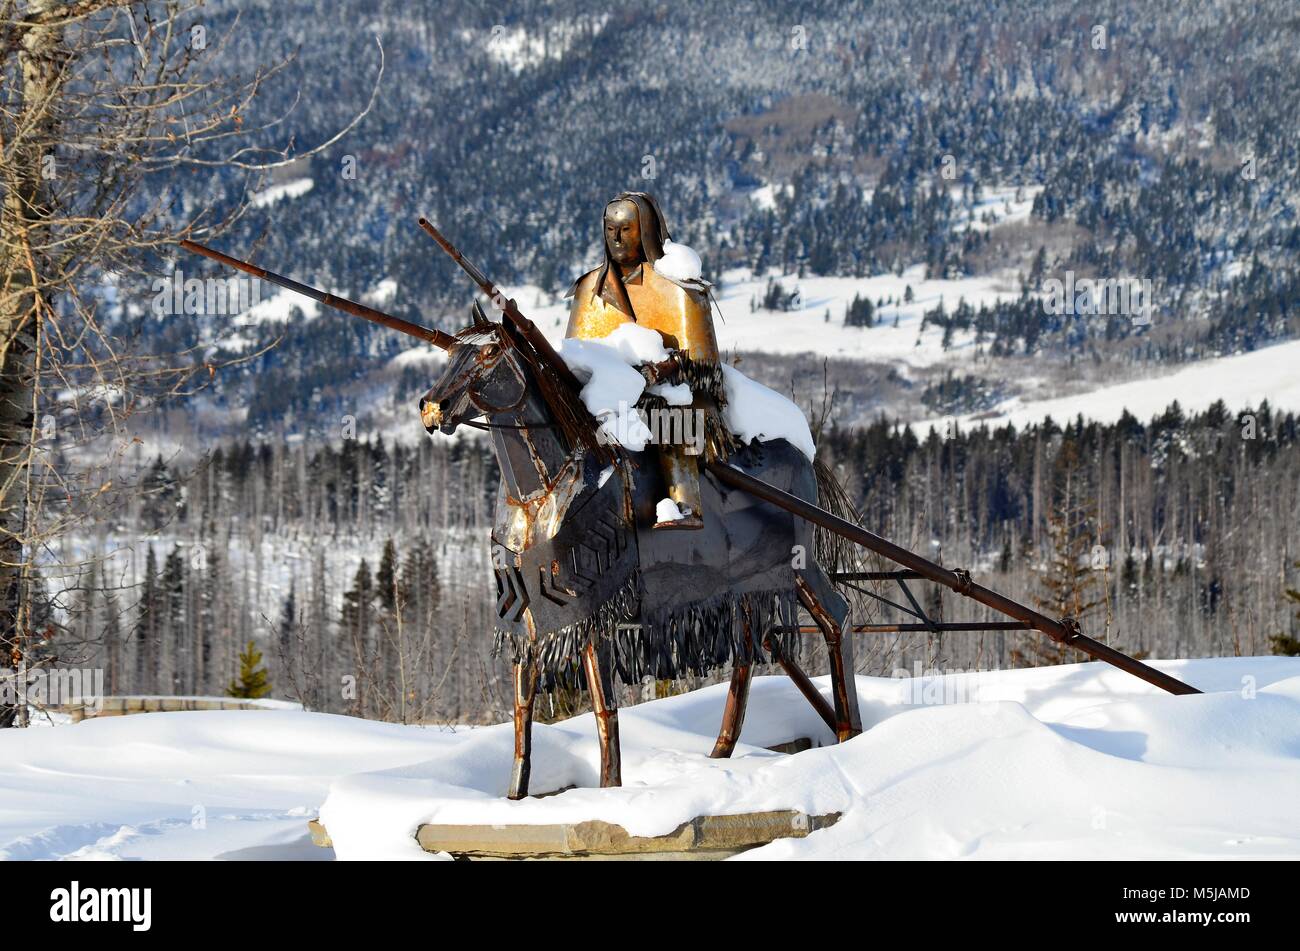 Una splendida statua in metallo di un guerriero femmina su un cavallo con un travois tirati. Il travois è stata utilizzata per spostare i campeggi e raggio forniture pesanti. Foto Stock